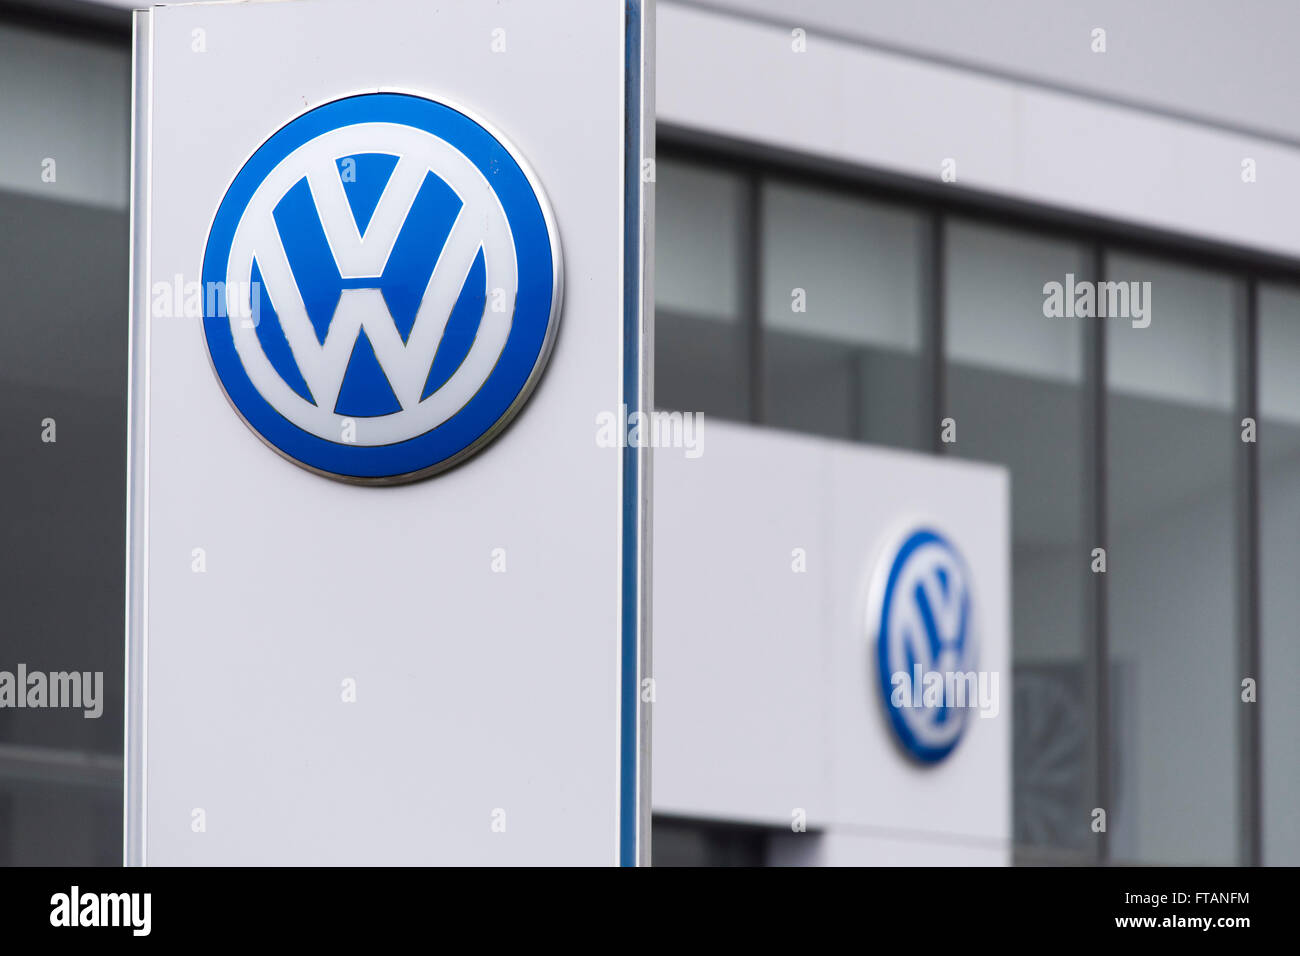 Volkswagen (VW) car manufacturer sign logo. Stock Photo